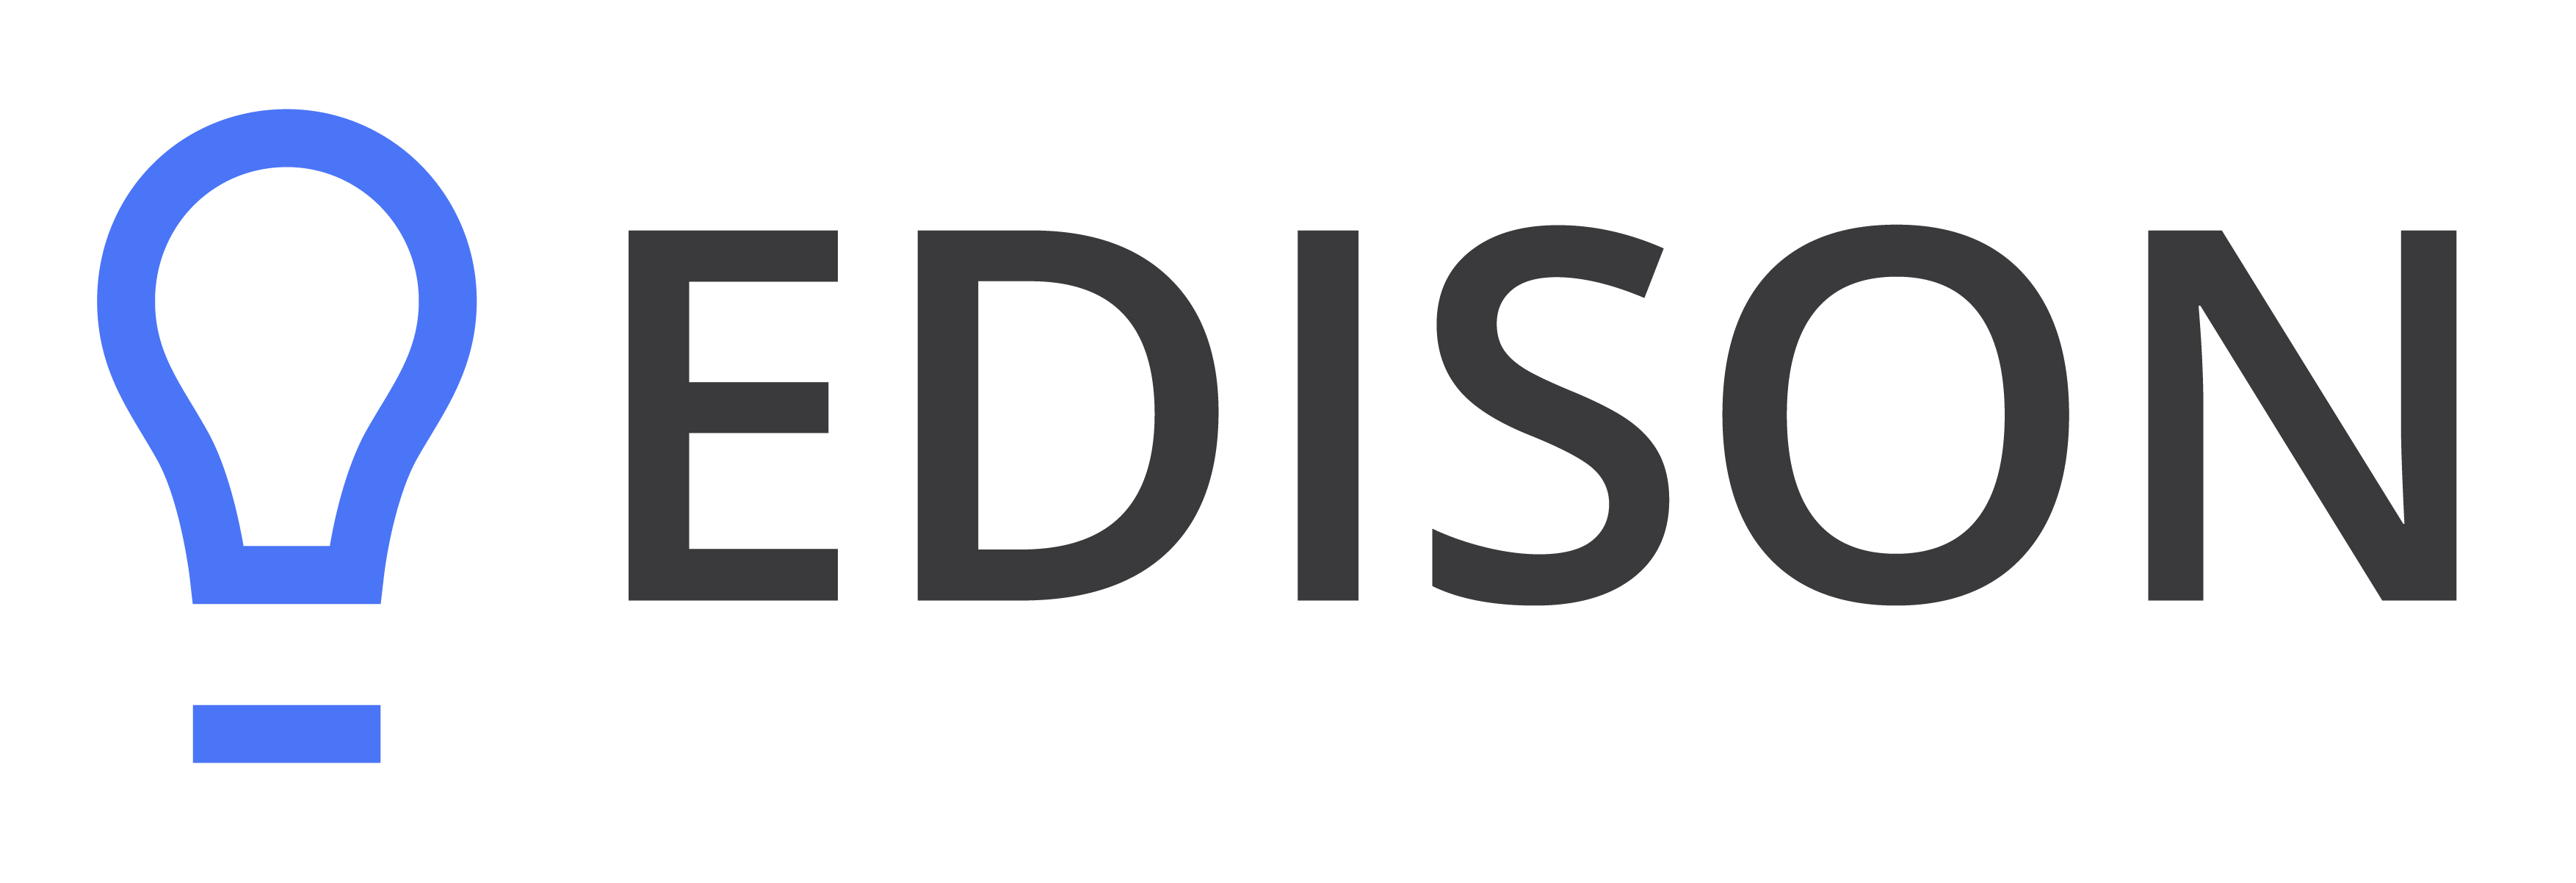 Эдисо. Edison надпись. Эдисон лого. Компания Эдисона. Edison Company logo.